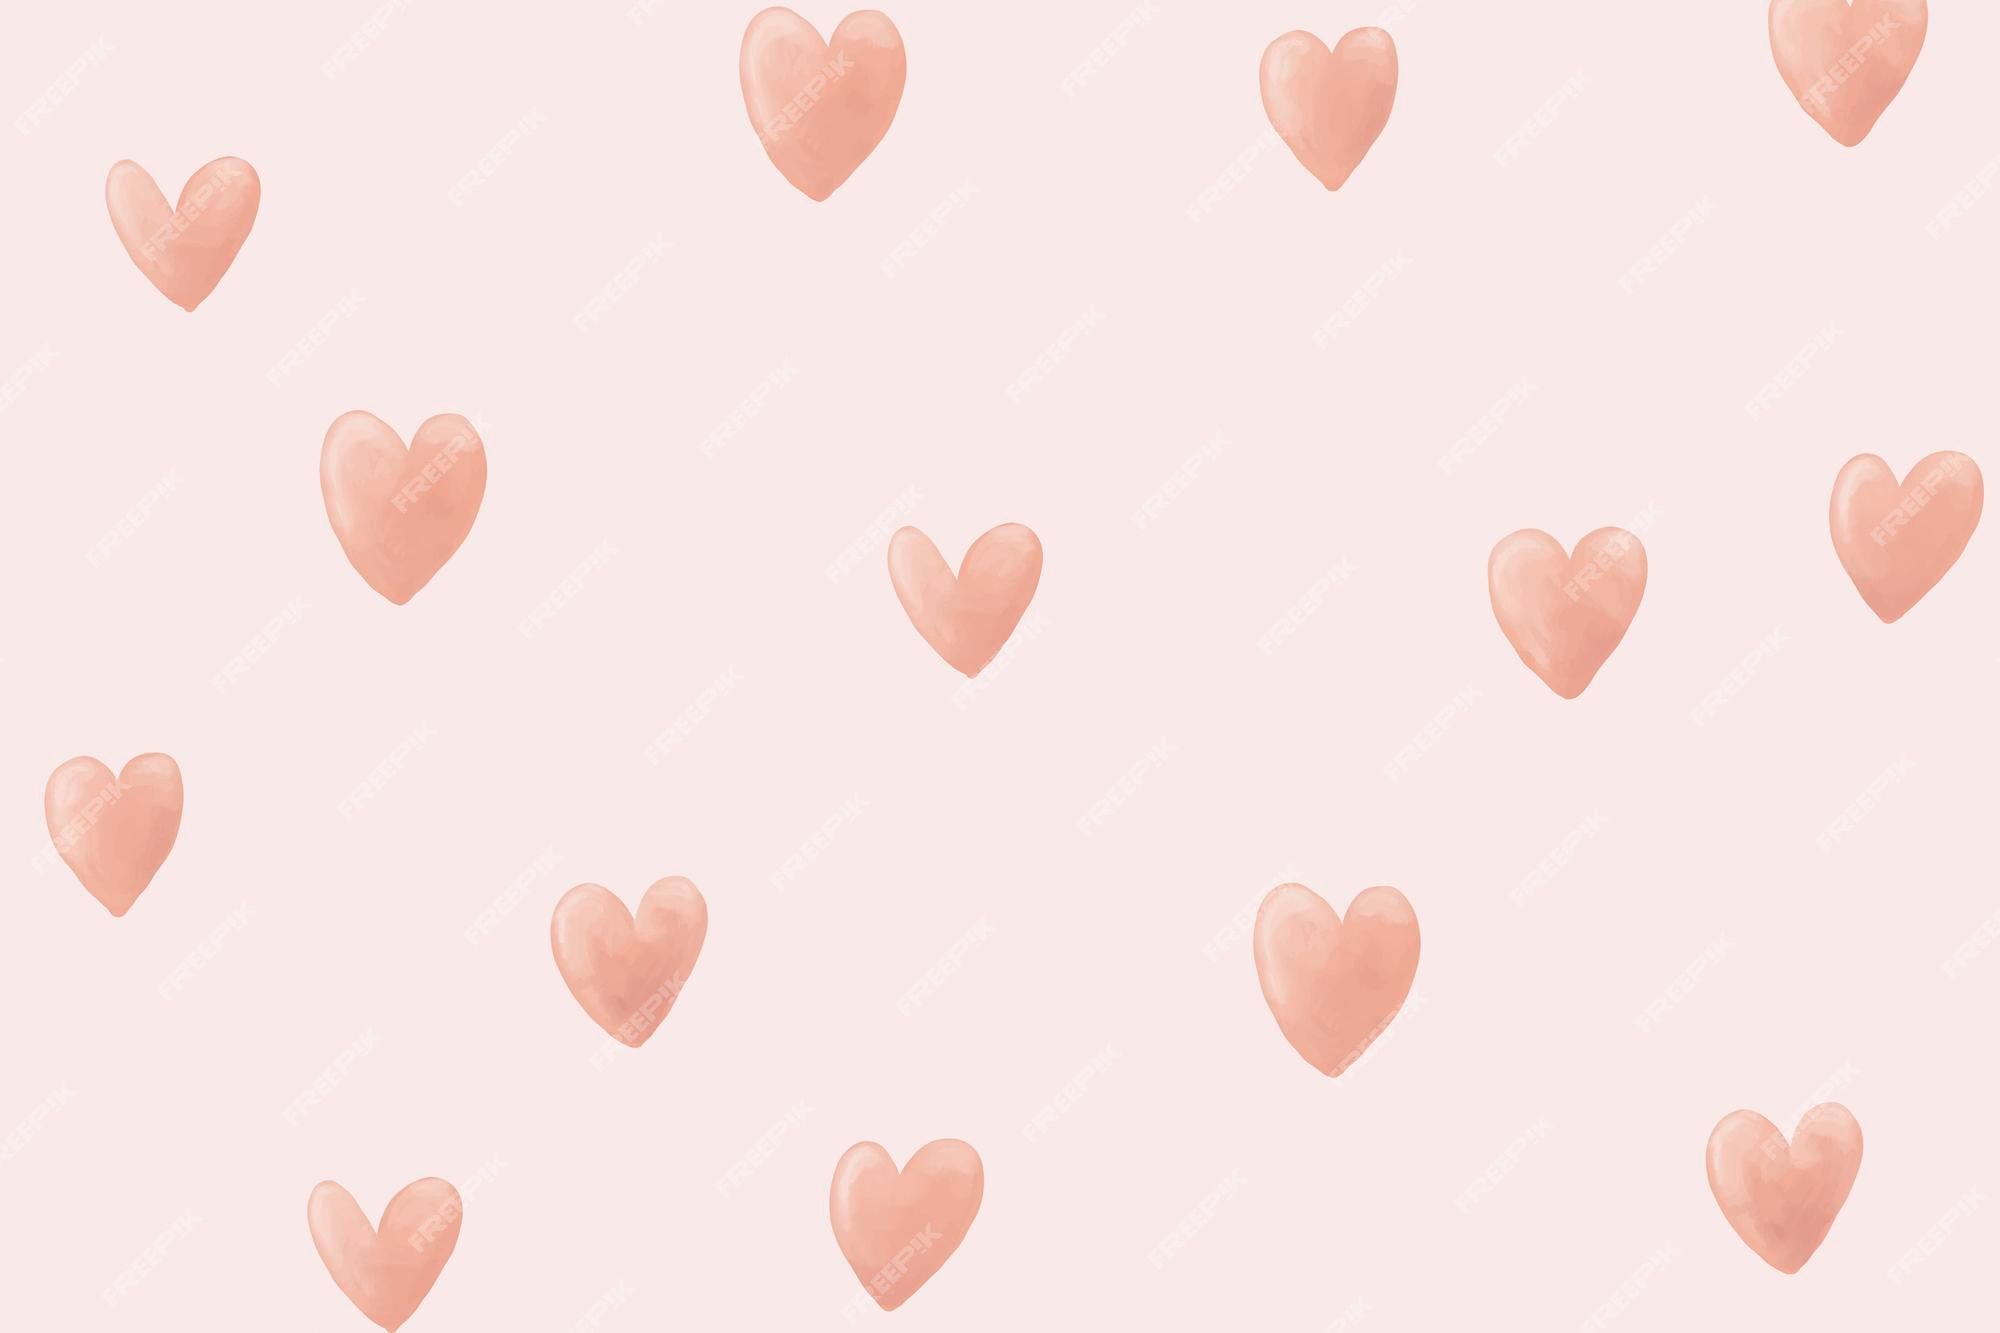 Aesthetic Heart Wallpaper Image